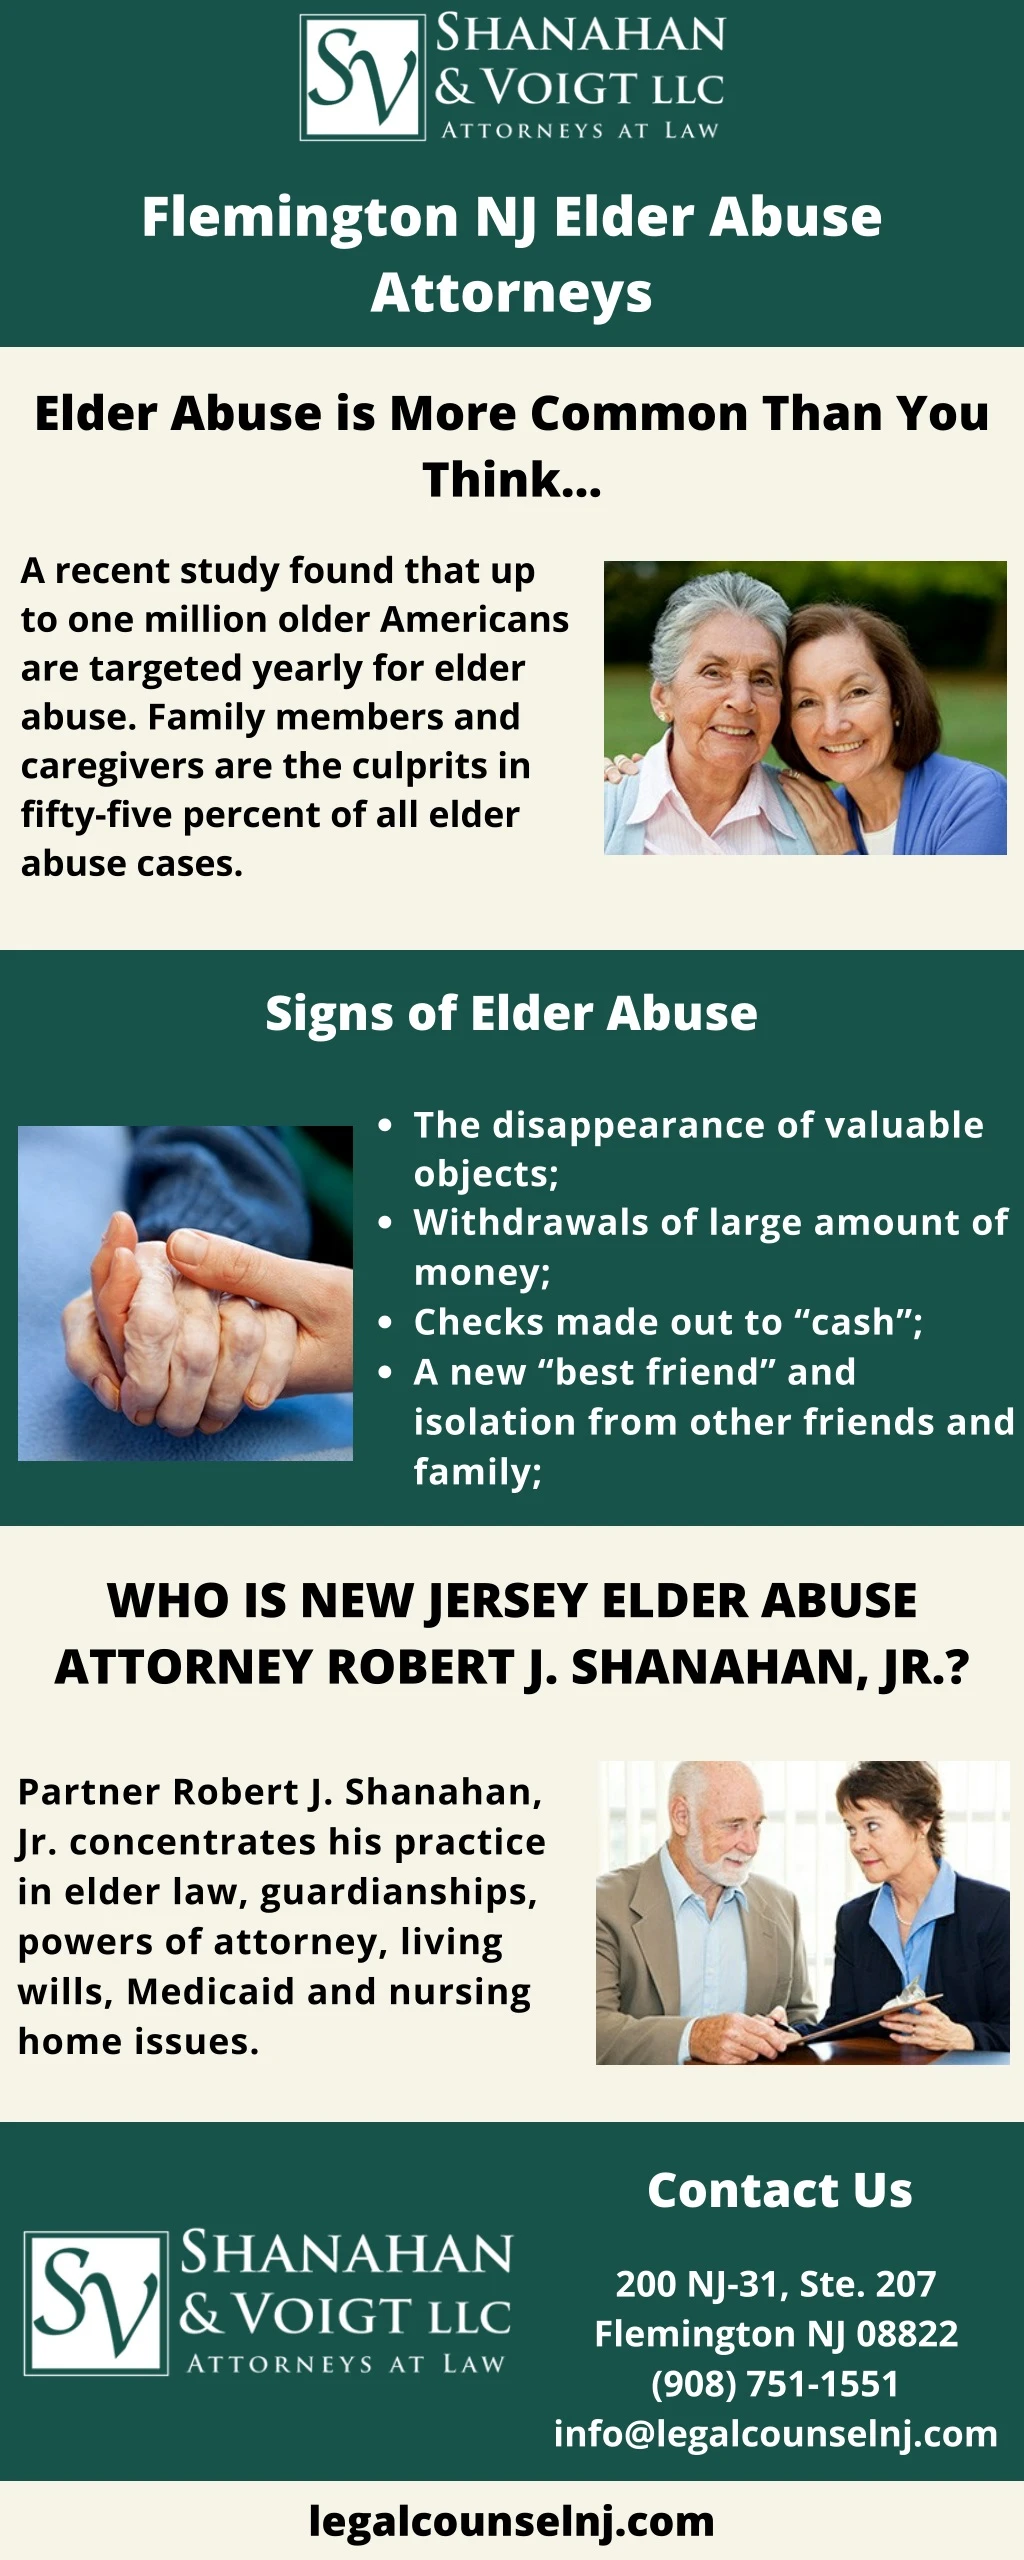 flemington nj elder abuse attorneys